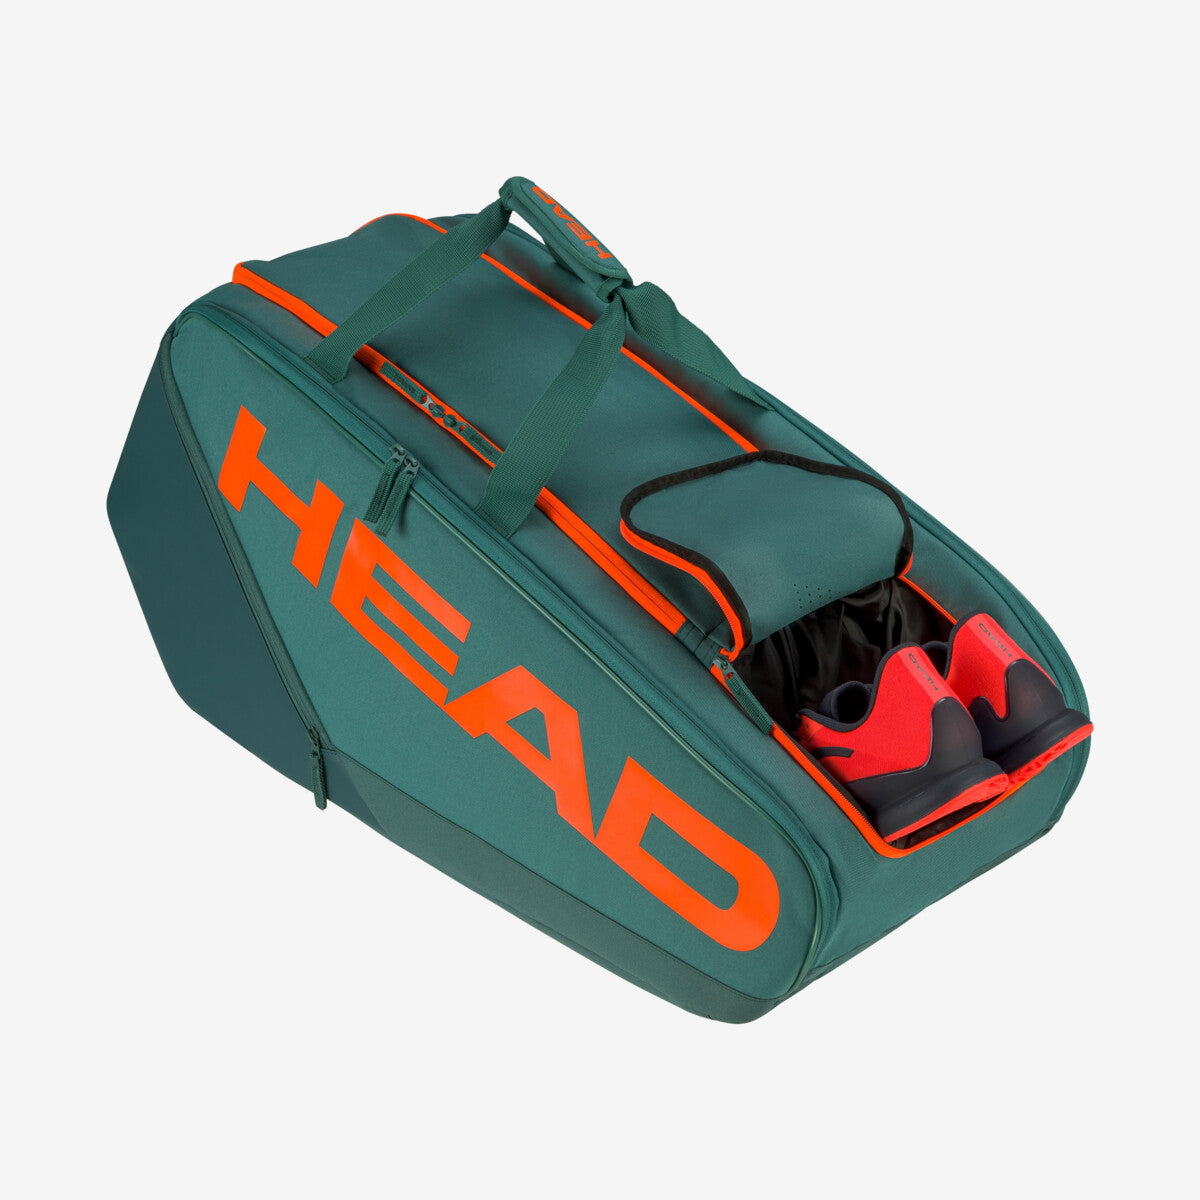 Head Pro racquet tennis bag - XL 260203